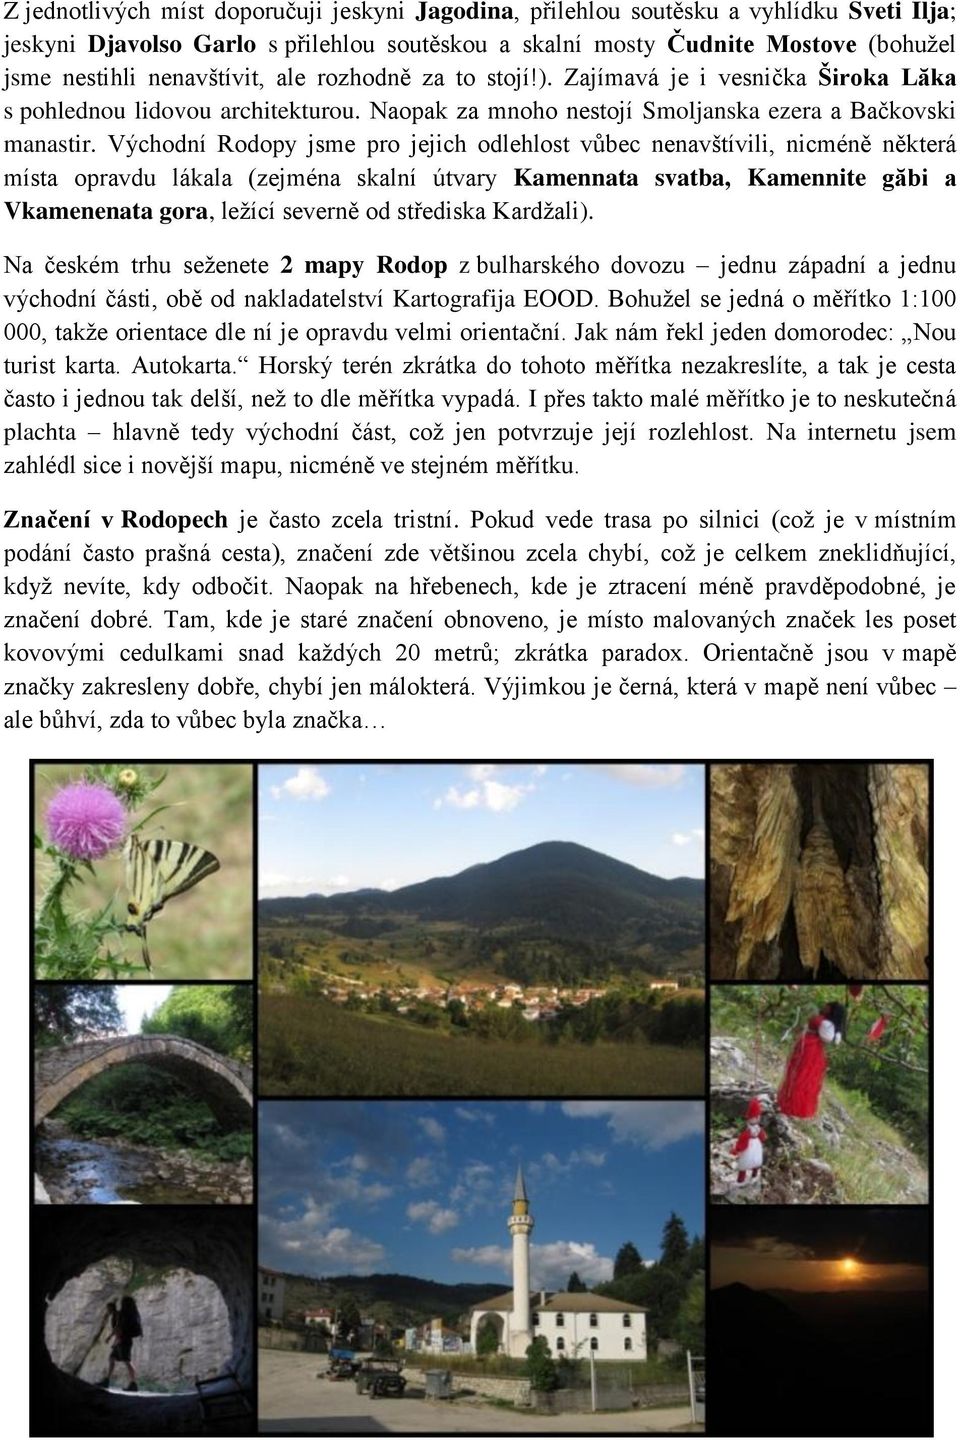 Východní Rodopy jsme pro jejich odlehlost vůbec nenavštívili, nicméně některá místa opravdu lákala (zejména skalní útvary Kamennata svatba, Kamennite găbi a Vkamenenata gora, ležící severně od